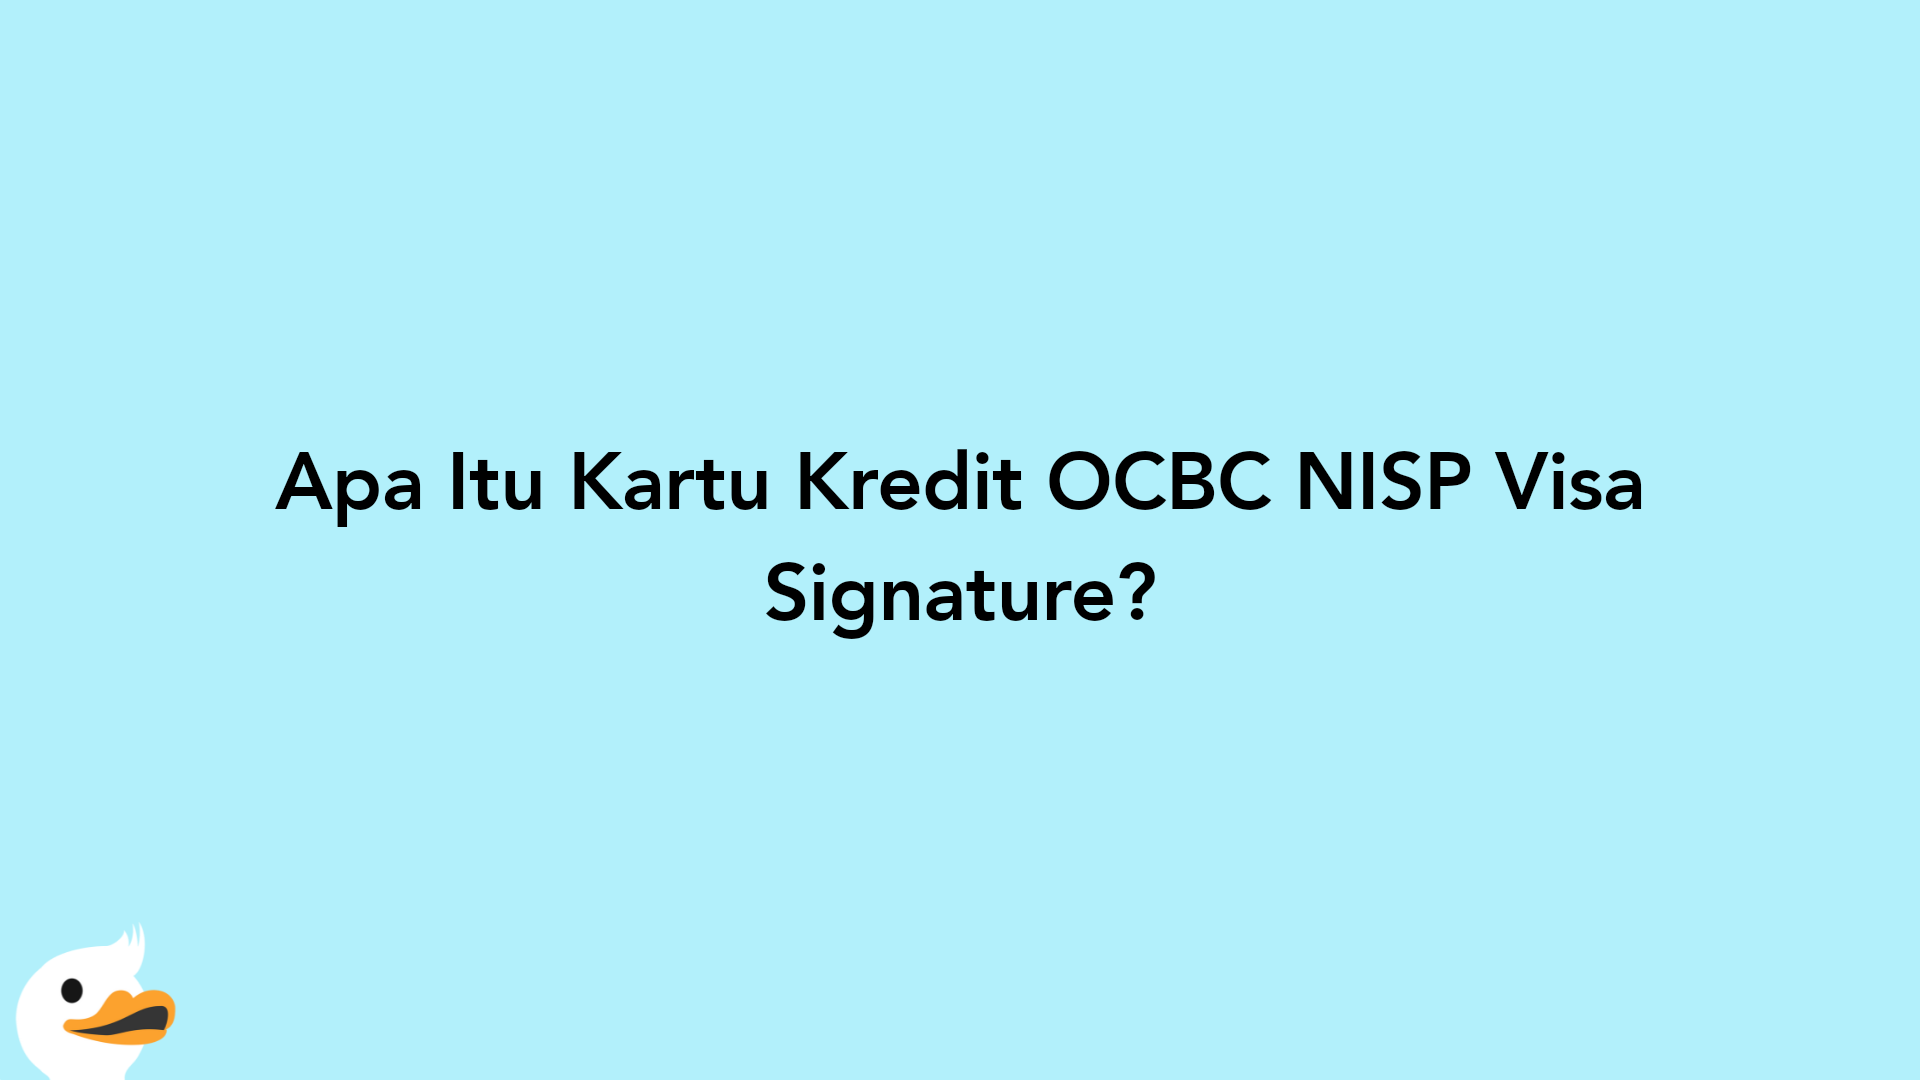 Apa Itu Kartu Kredit OCBC NISP Visa Signature?